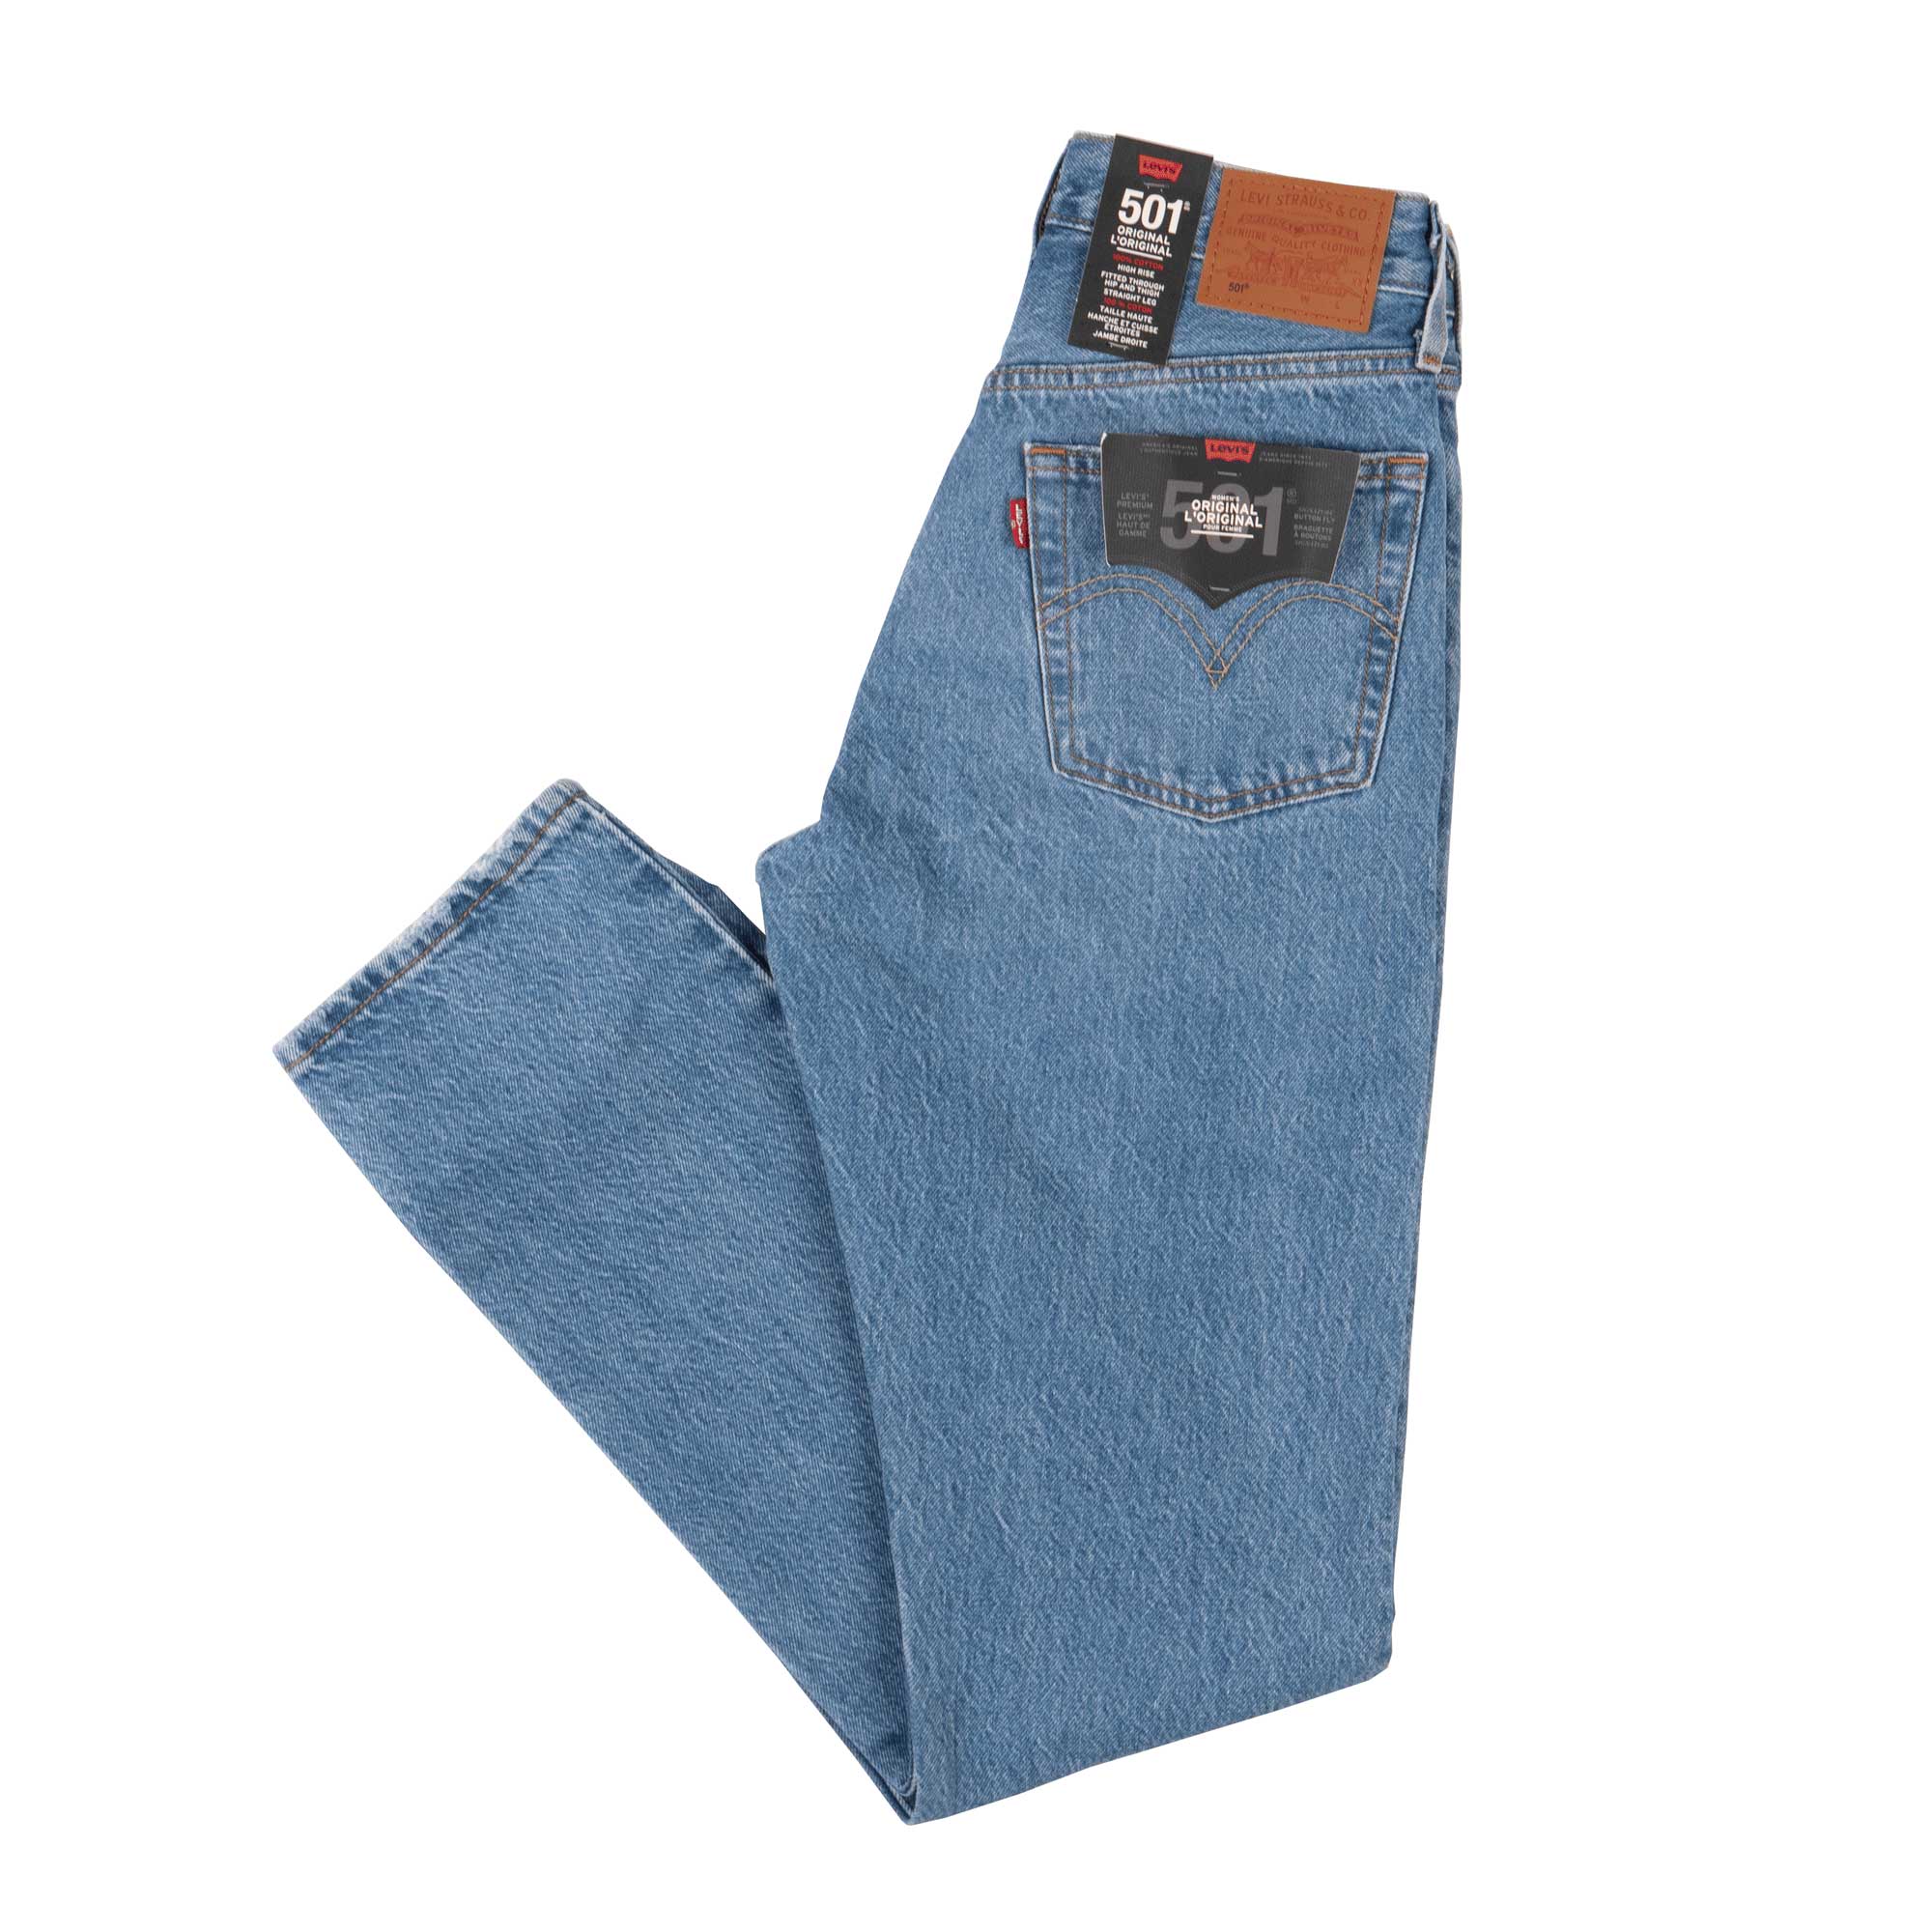 Levis 501 Jeans 